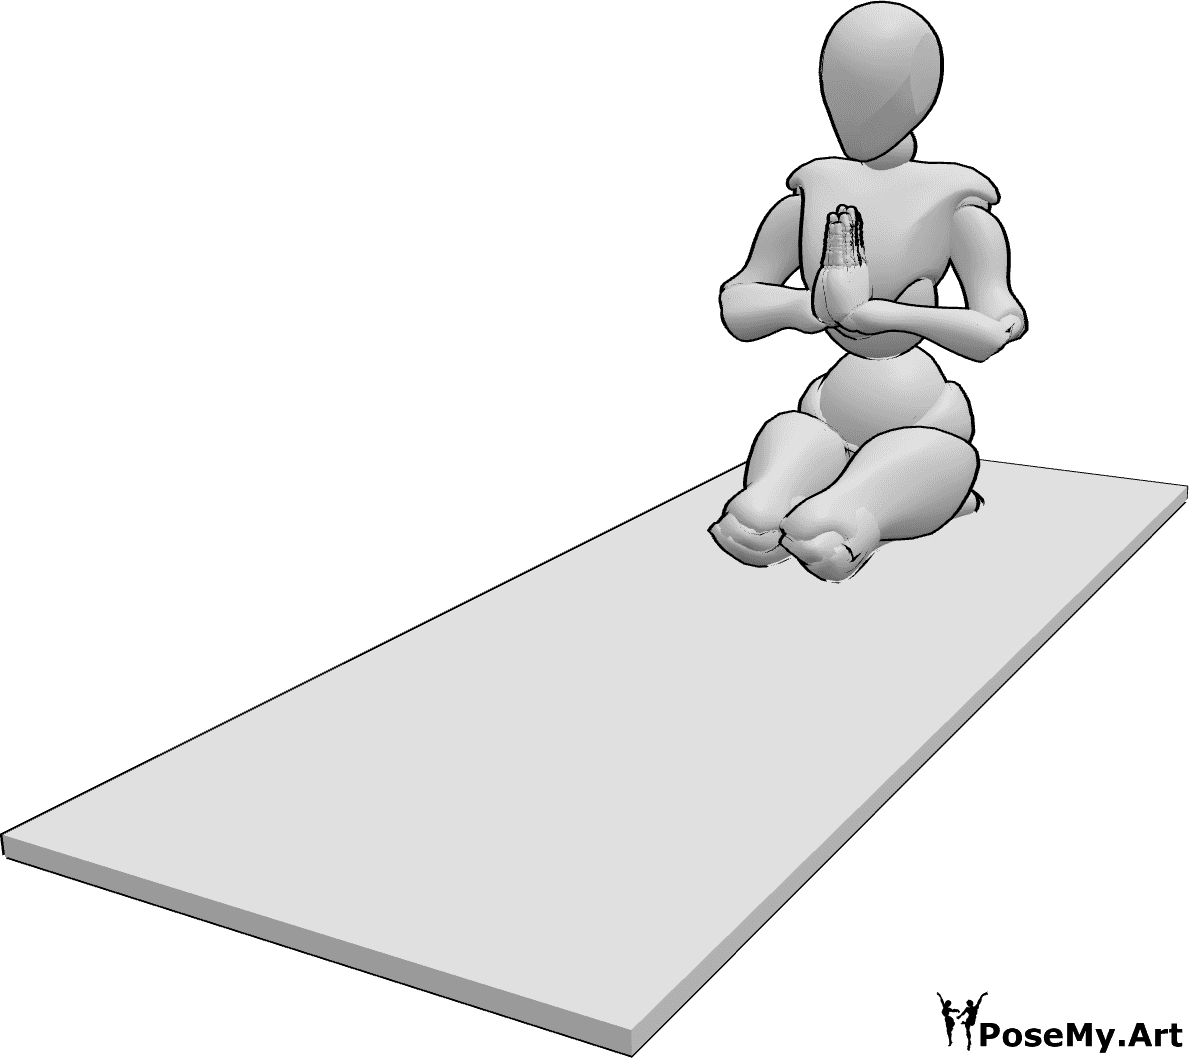 Referência de poses- Pose de ioga feminina - A mulher está a fazer uma pose de ioga